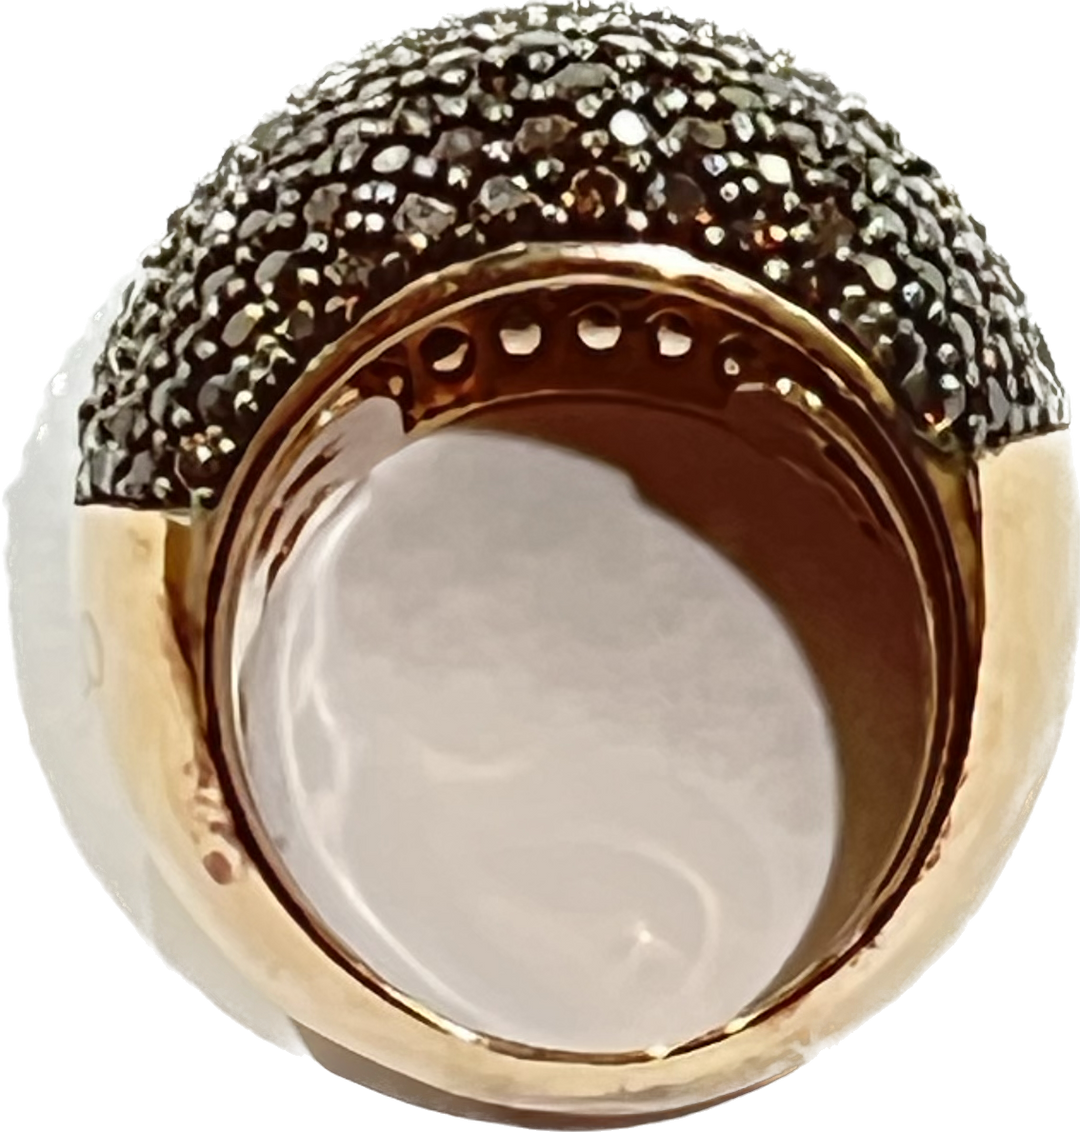 Sidalo Pavè Braun Ring Silber 925 Finish PVD Gold Rosa Kubikzirkonia M4425-BW